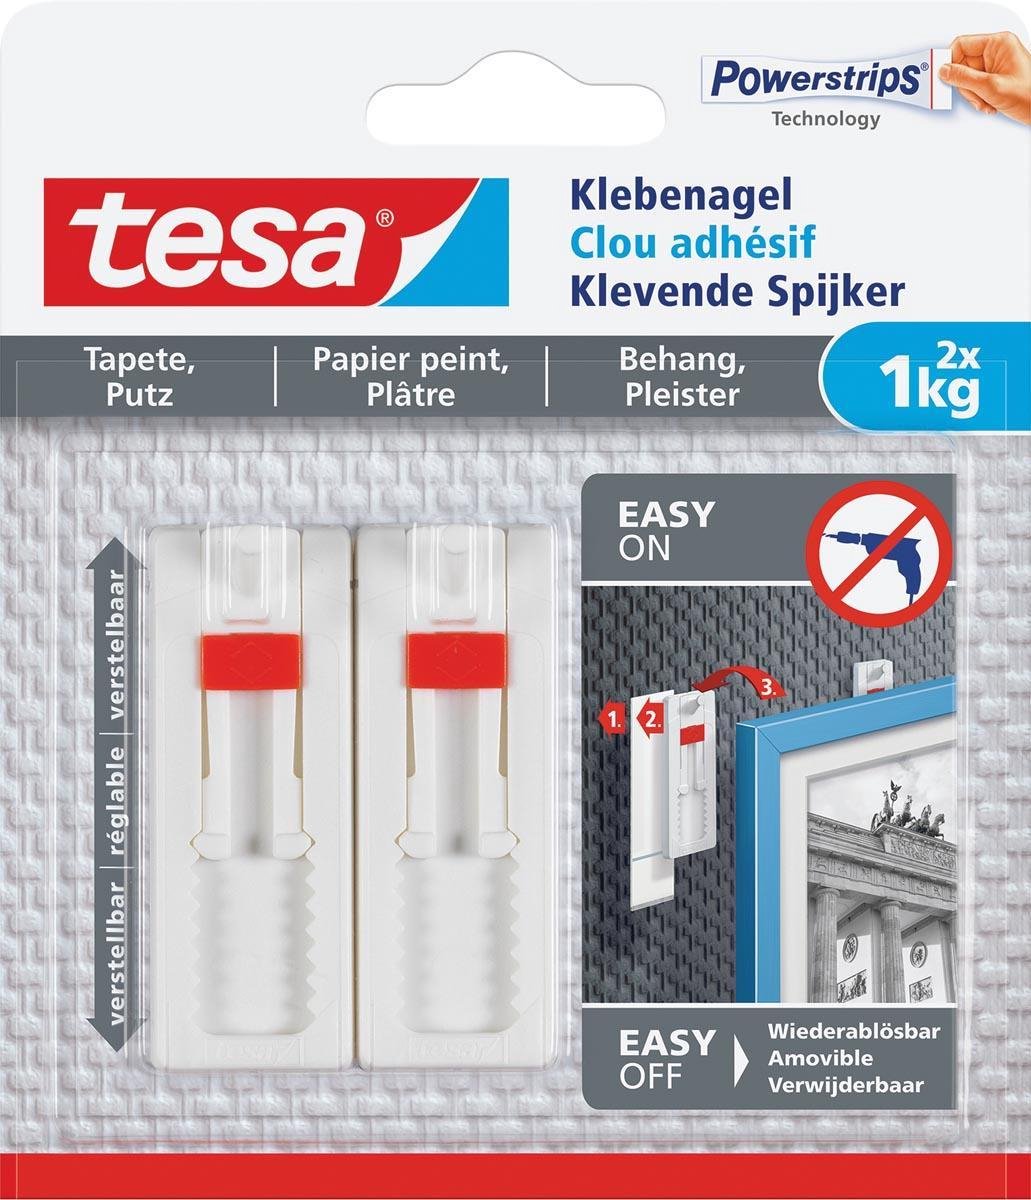 6x Tesa Klevende Spijker voor Behang en Pleisterwerk, verstelbaar, draagvermogen 1 kg, blister a 2 stuks - Tesa